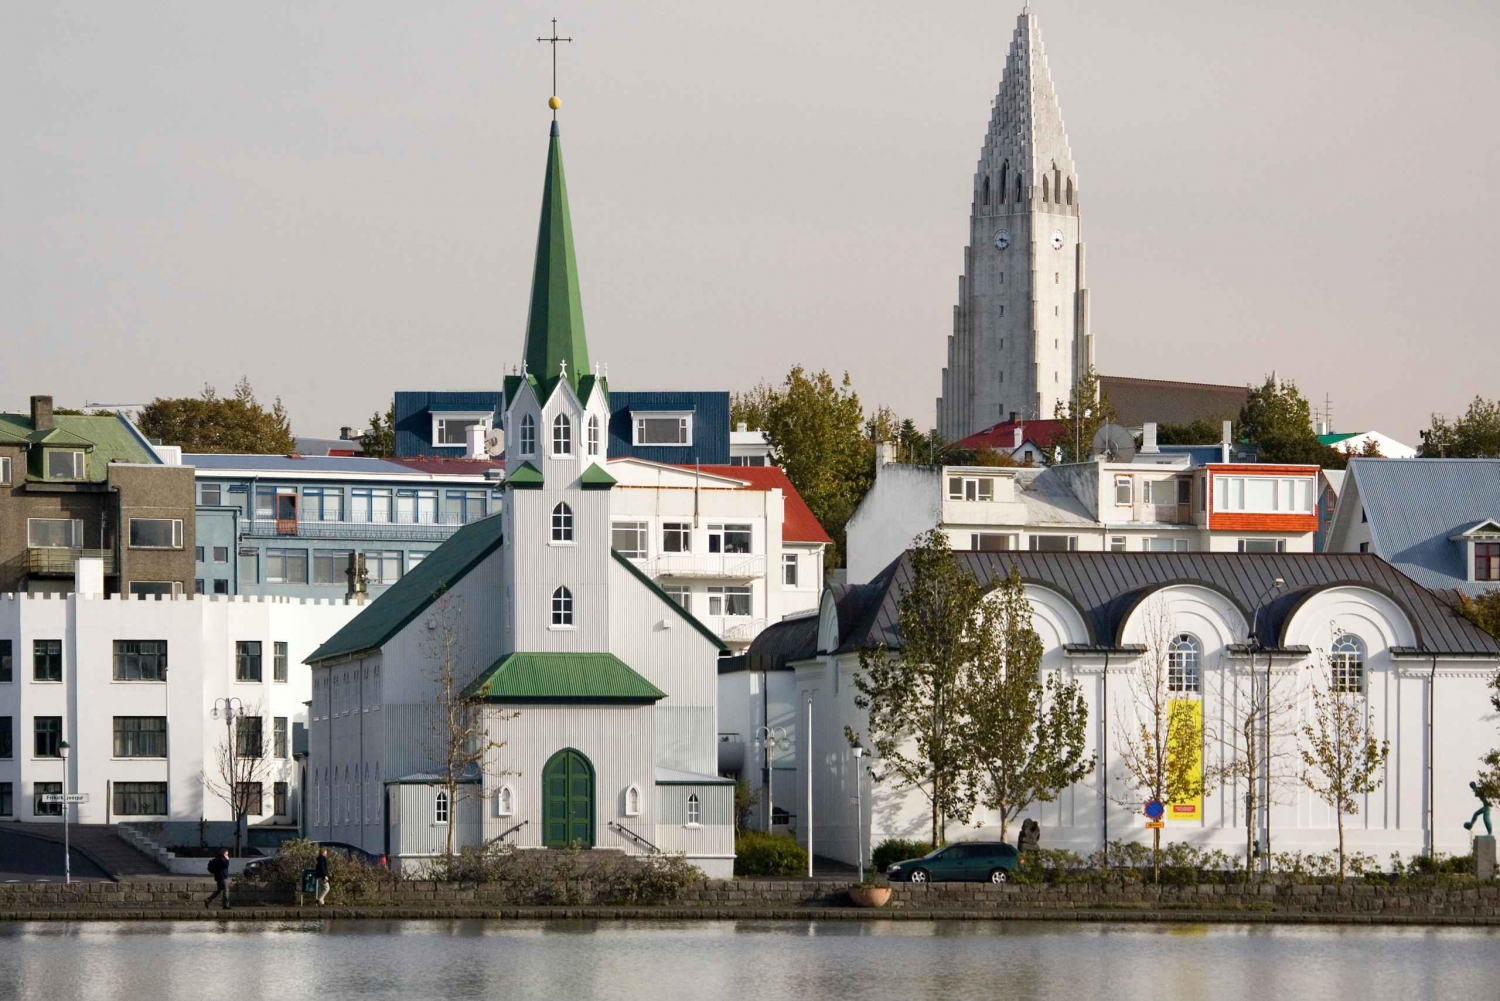 Reykjavik: Express wandeling met een local in 60 minuten